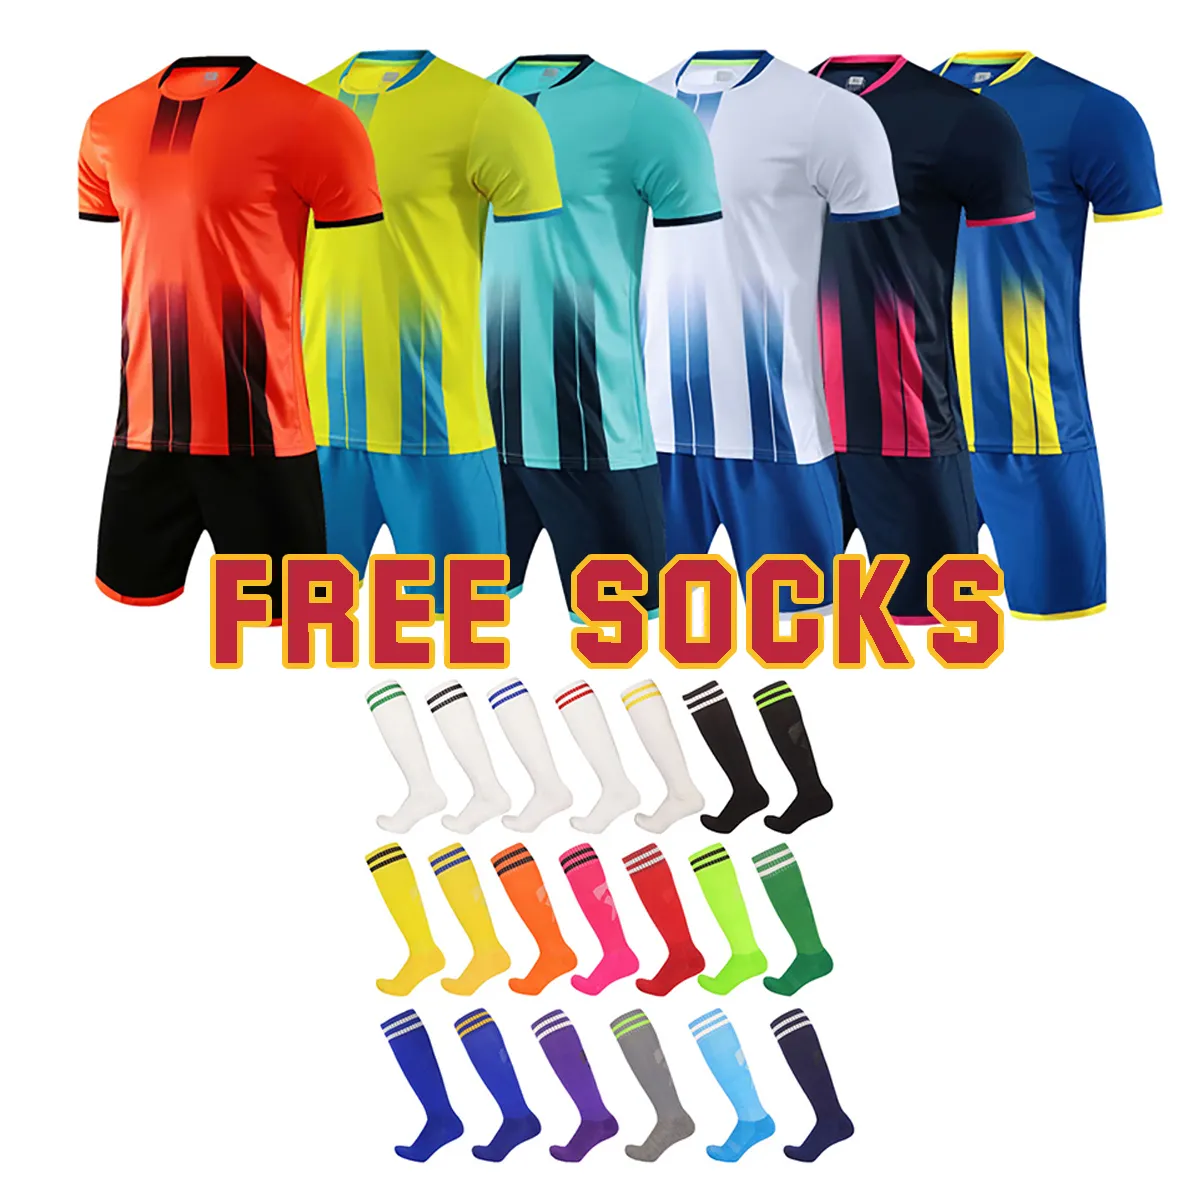 Camiseta deportiva personalizada de poliéster transpirable para hombre, conjuntos de uniformes de fútbol, conjunto completo de camisetas de fútbol